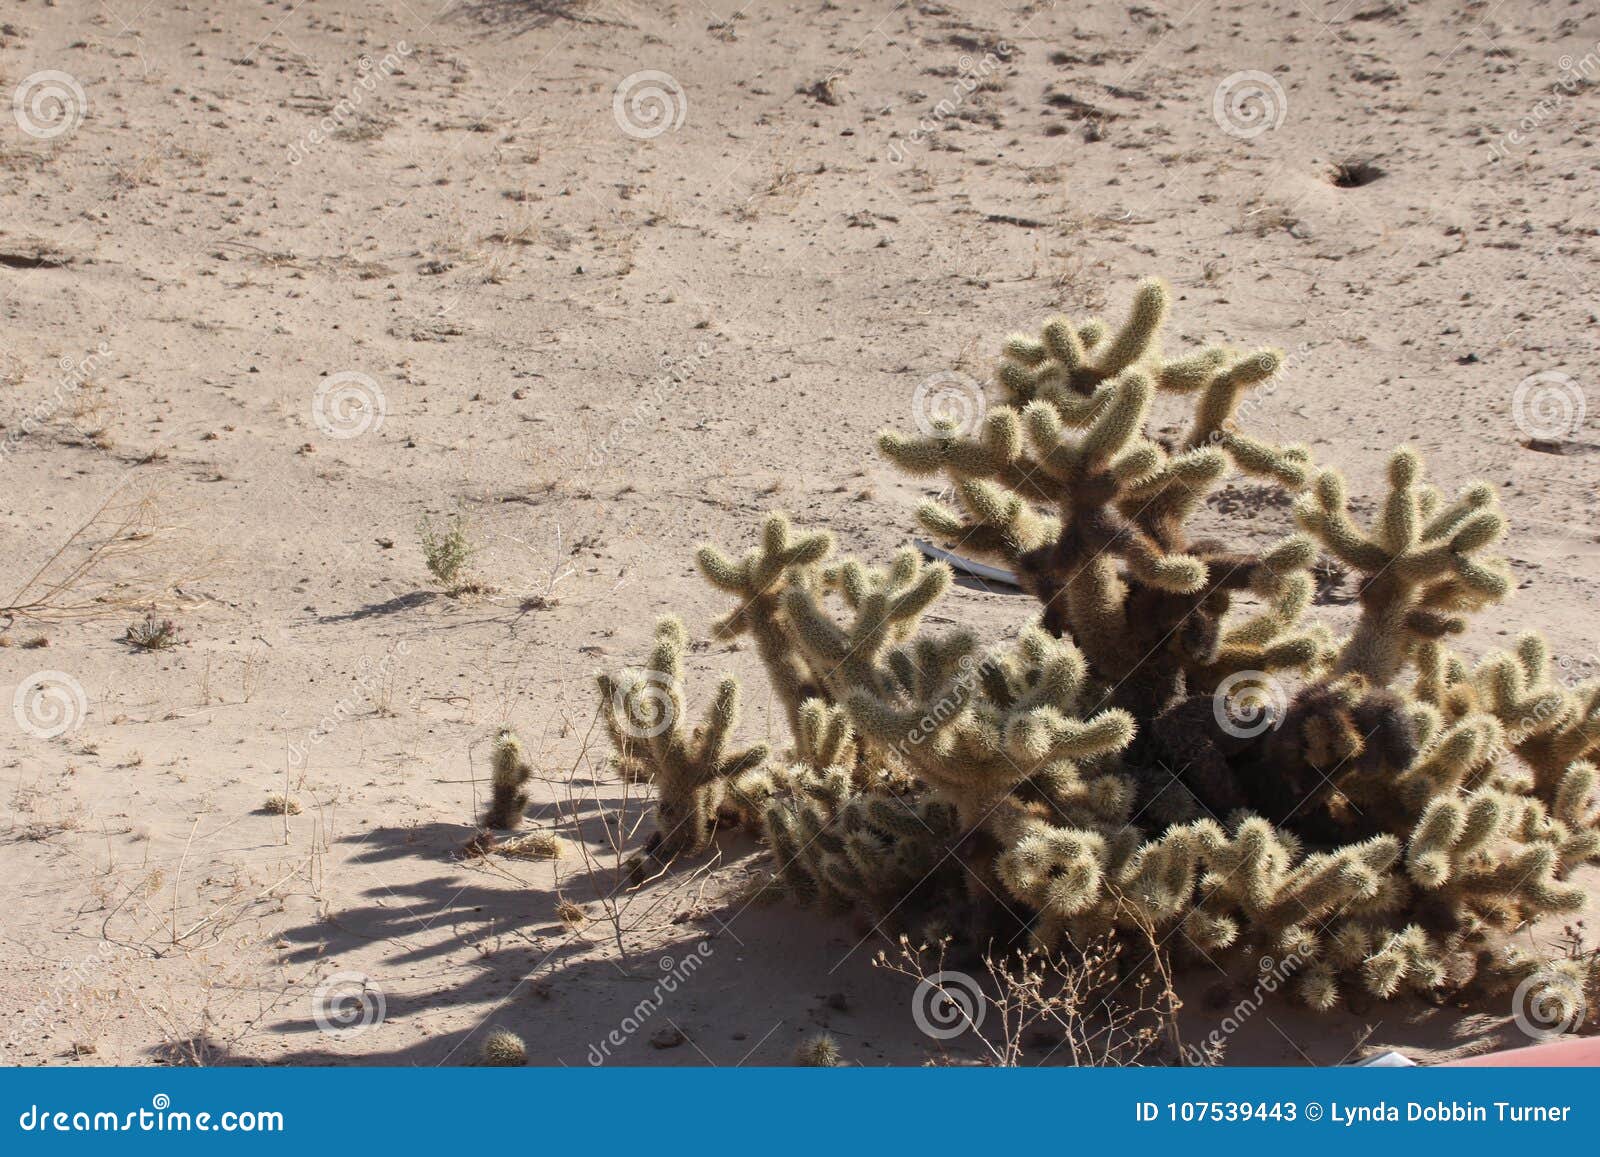 cholla cactus near el golfo de santa clara, sonora, mexico